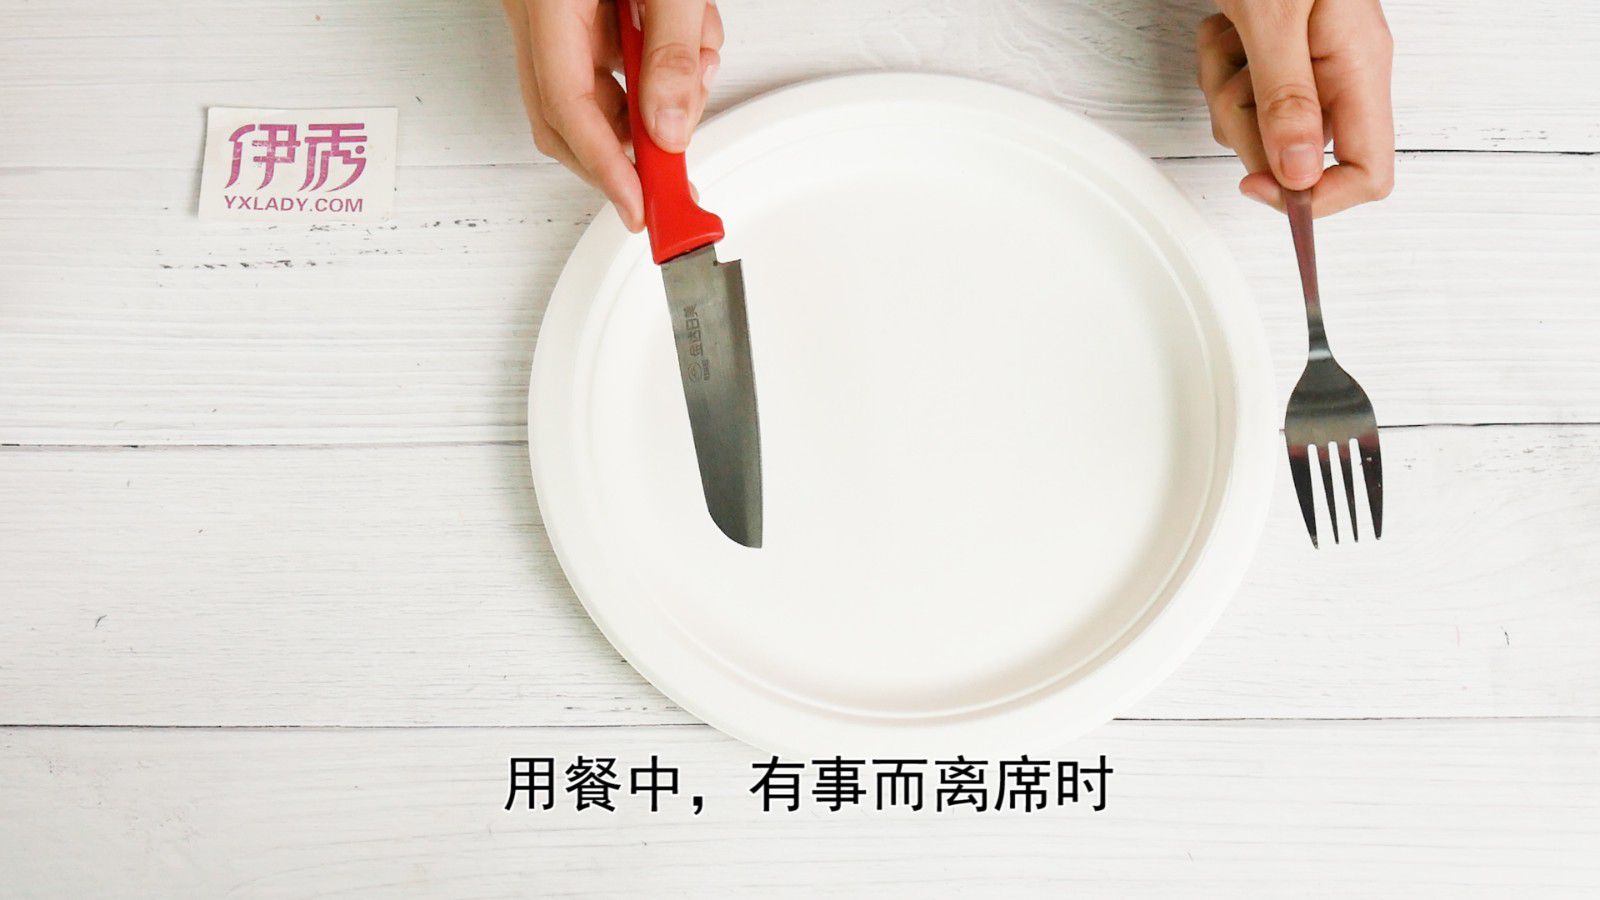 【餐具礼仪】如何摆放你的餐具? How to rest your fork and knife? - 知乎